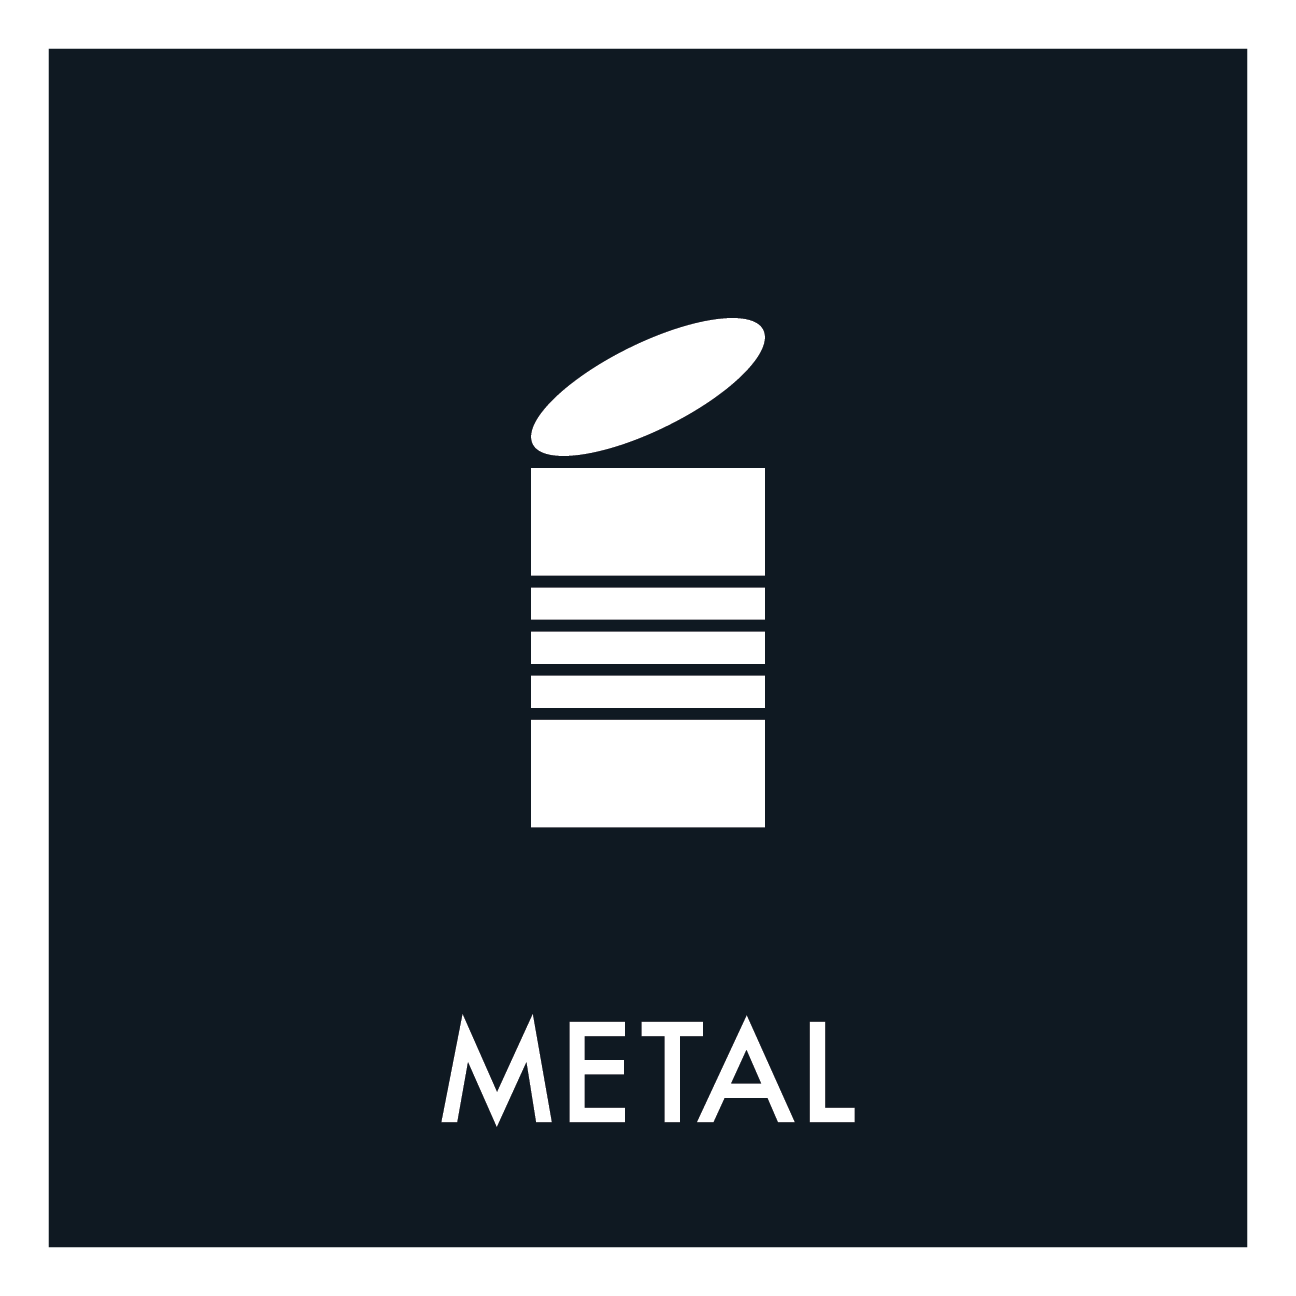 Metal affald sort skilt - Dansk Affaldssortering